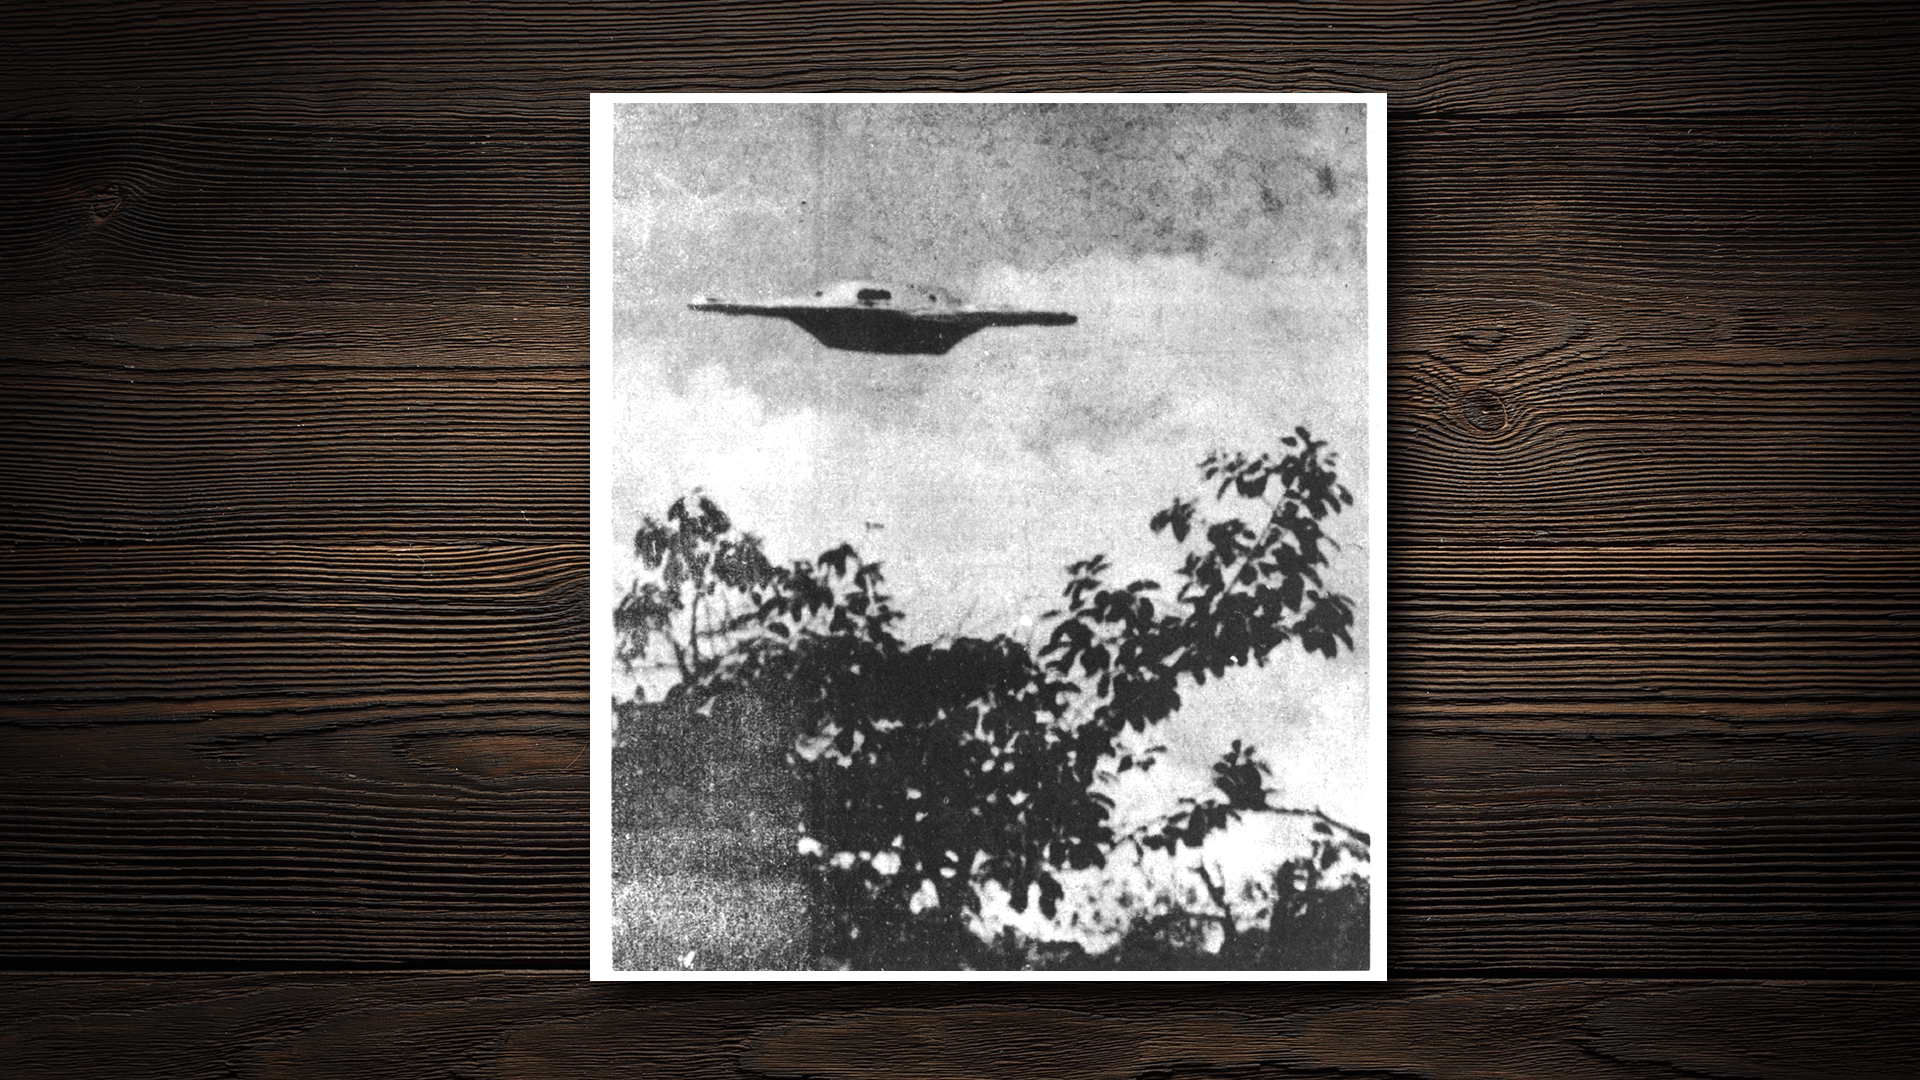 9.ago.2017 - Em 1969, um fotógrafo registrou a imagem de um suposto óvni em Goiânia: a foto foi parar no material da Aeronáutica e está no Arquivo Nacional - Arte/UOL